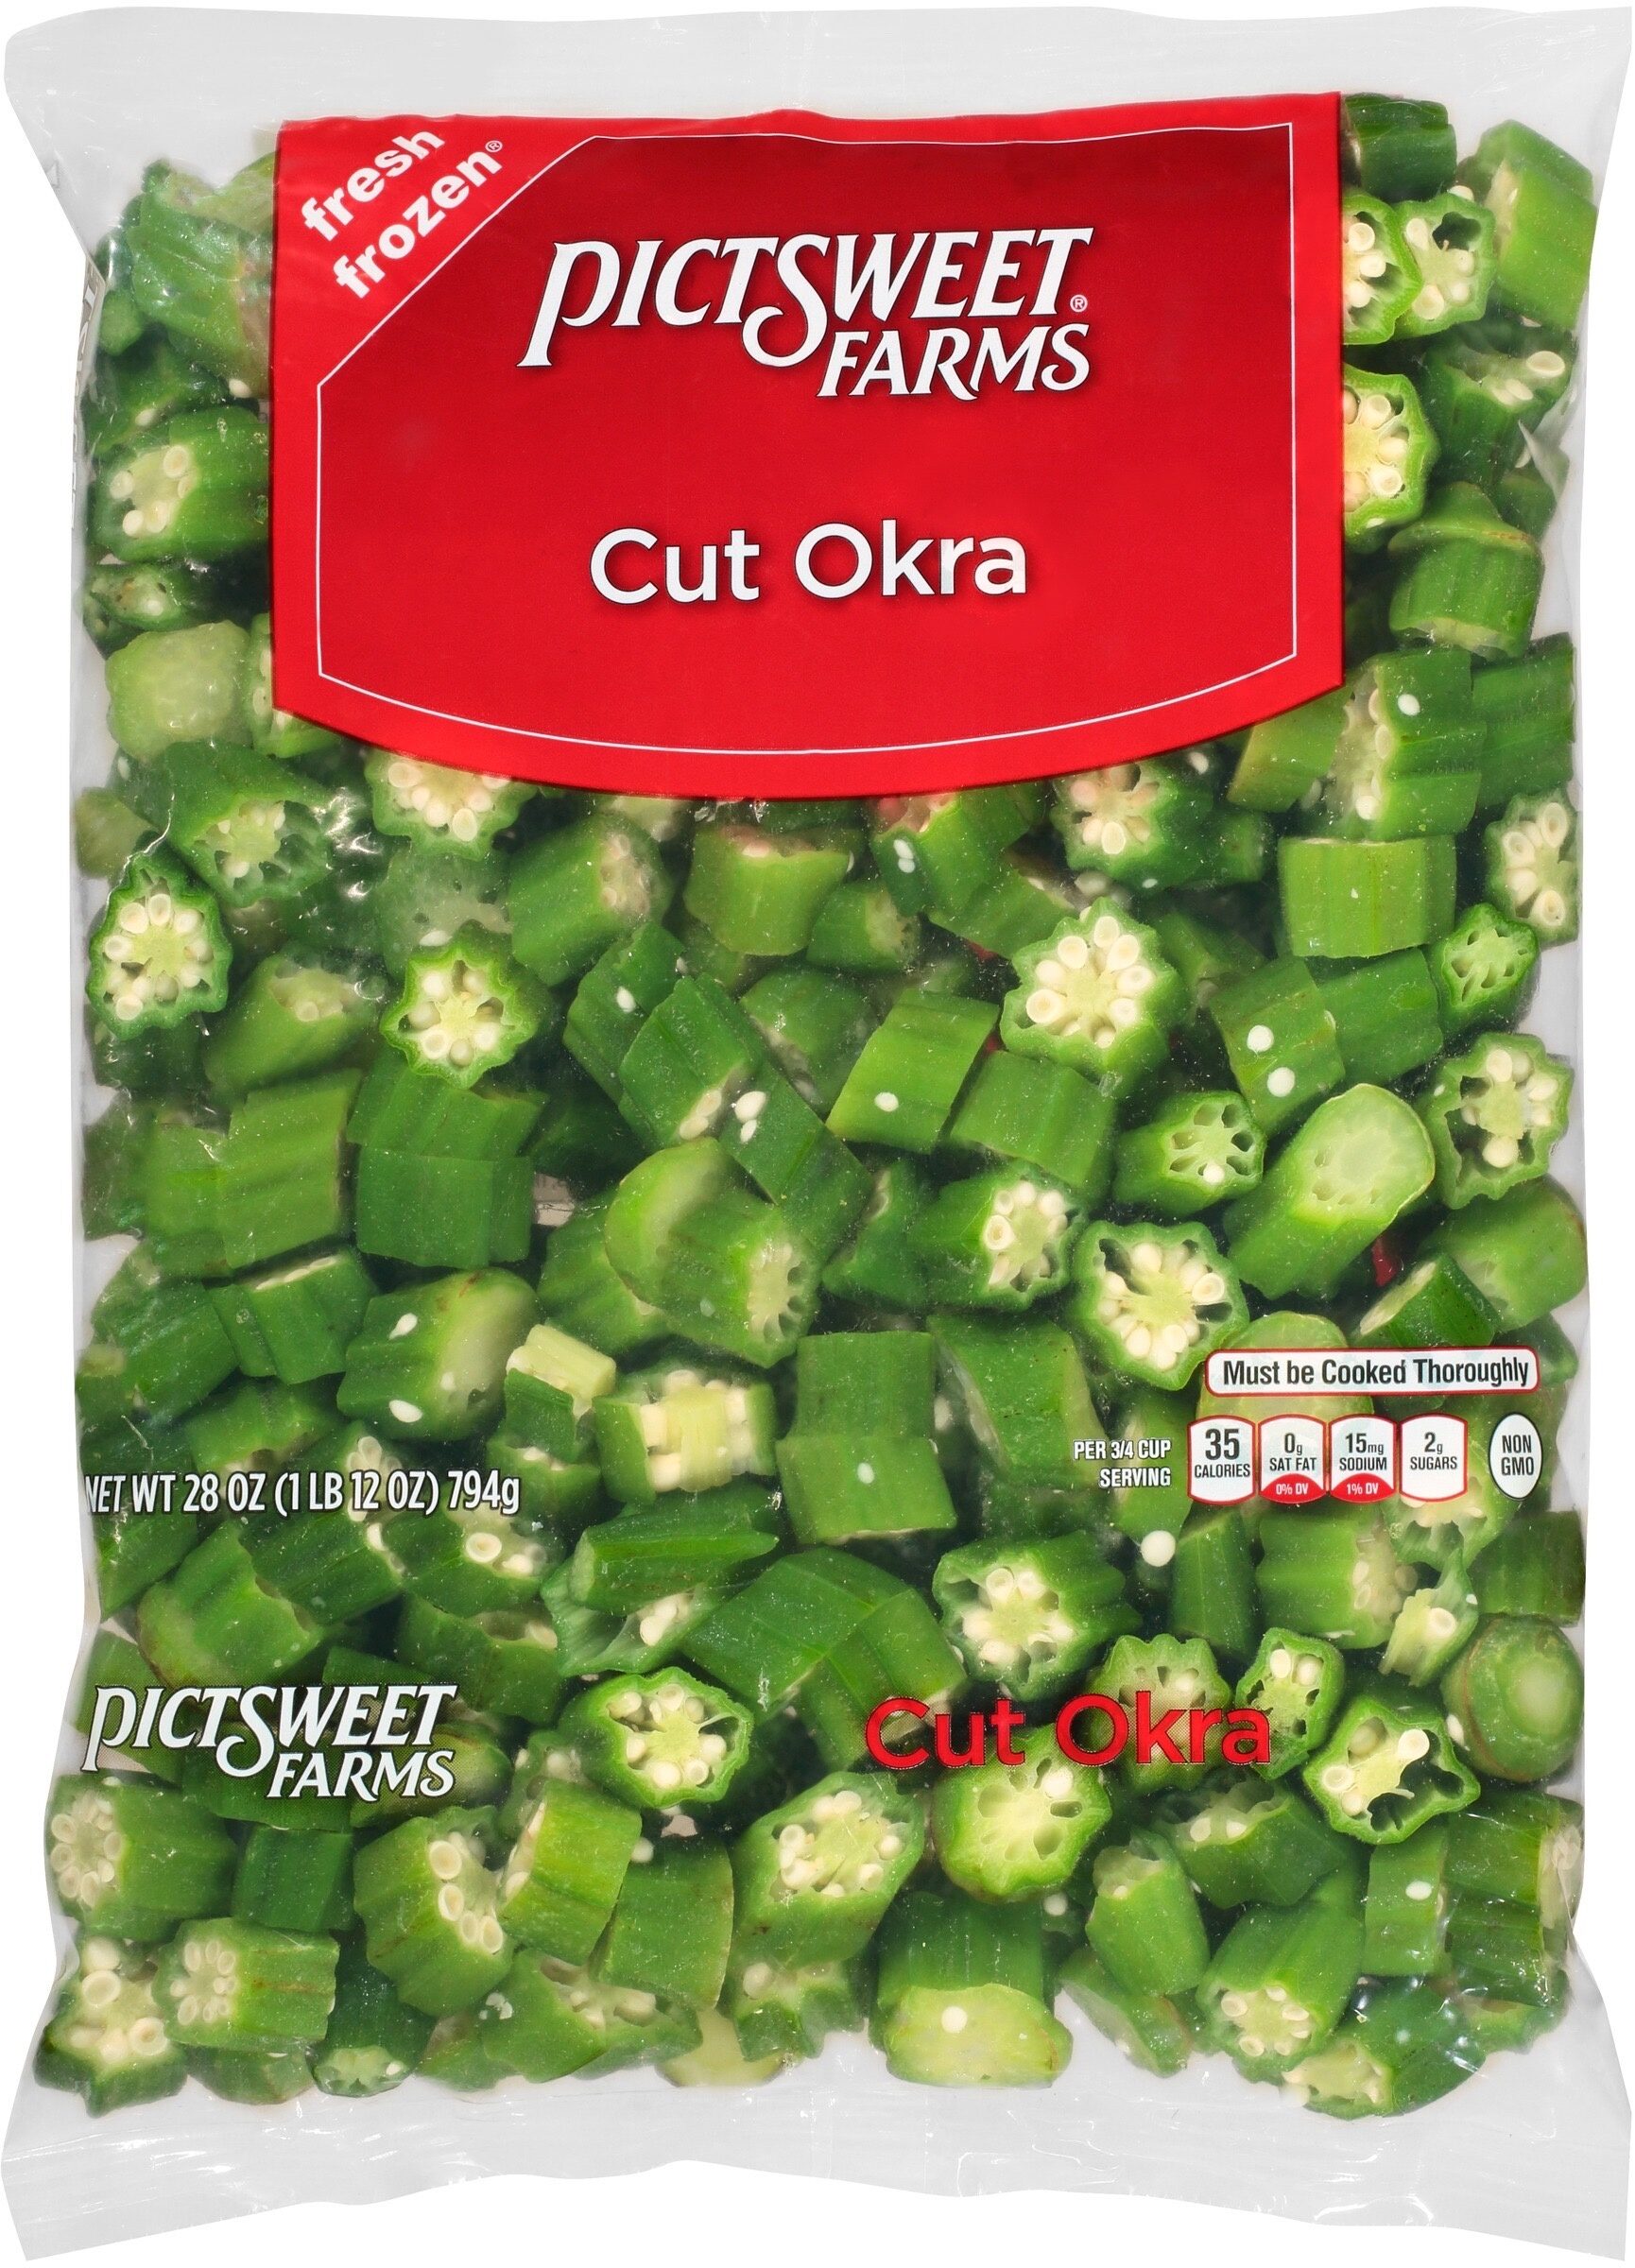 Cut Okra - Ingredients